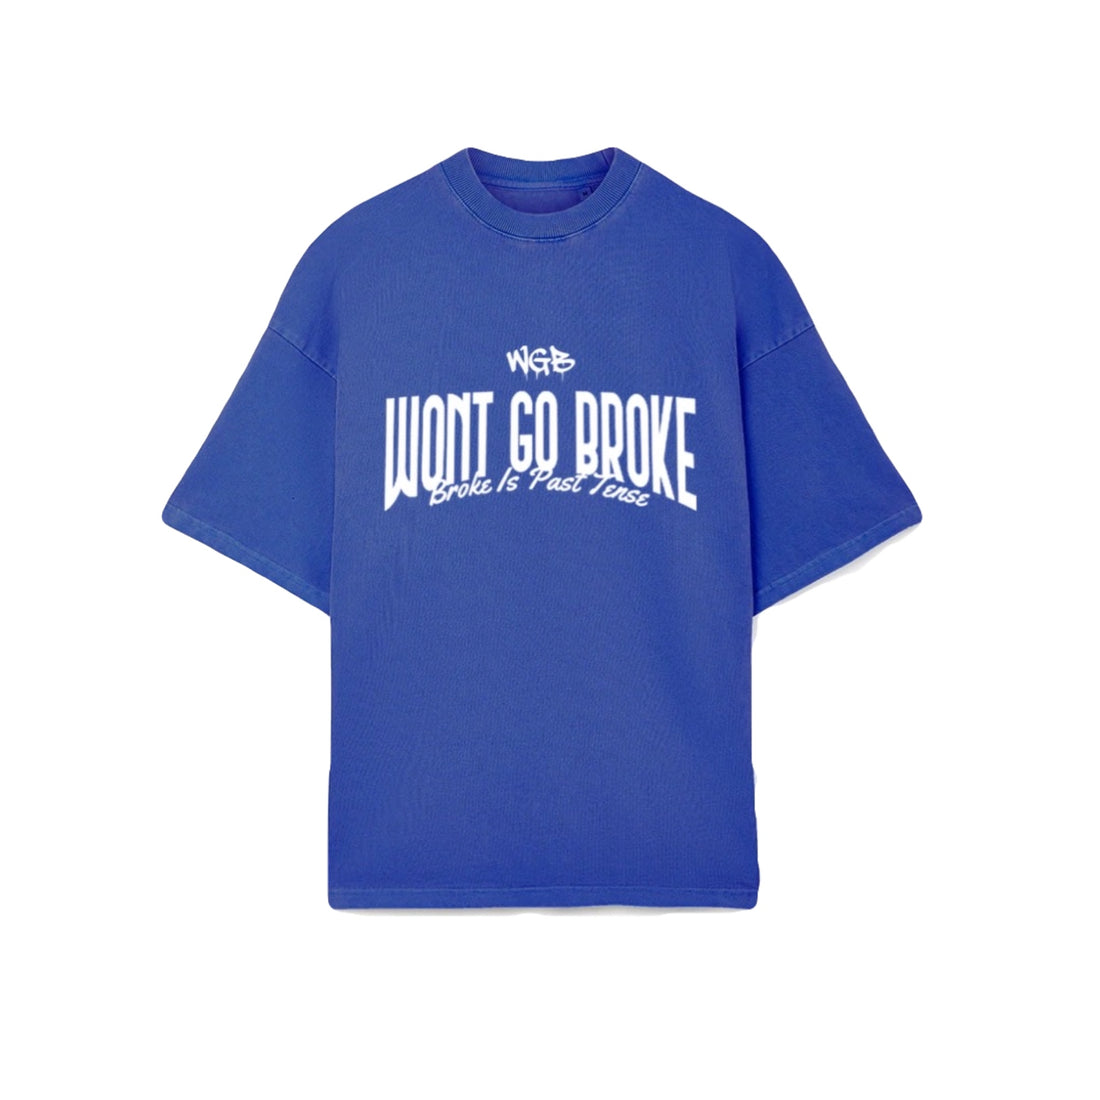 WGB “BIPT” T-Shirt Blue